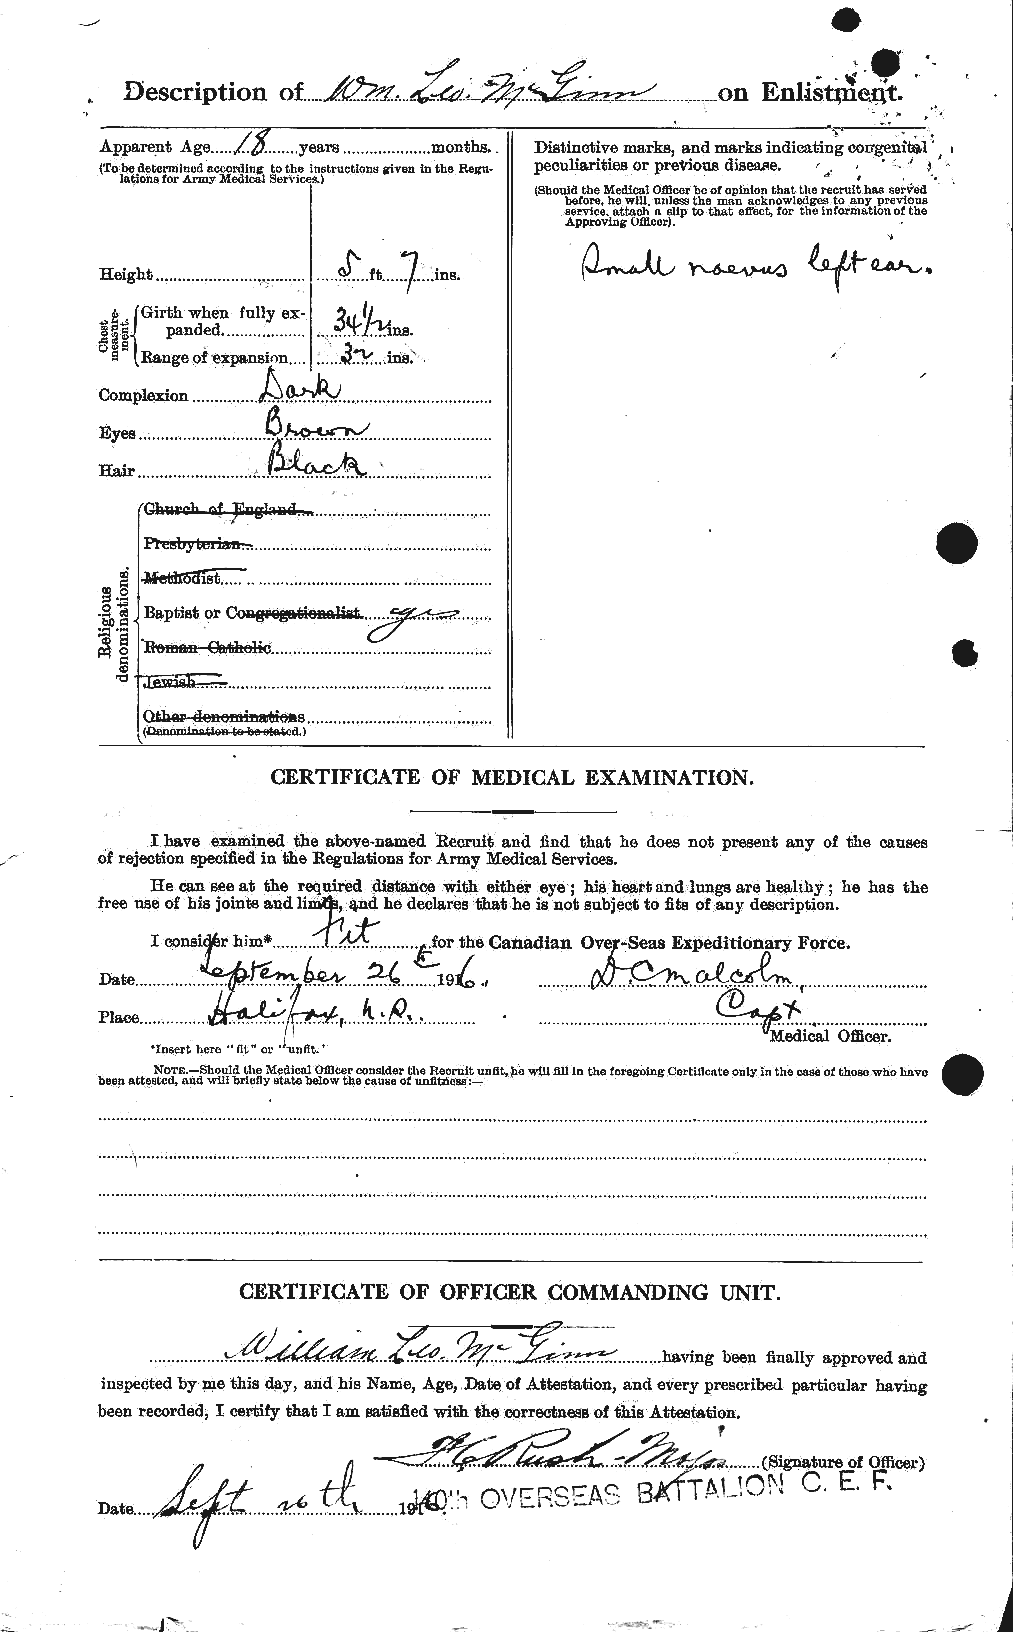 Dossiers du Personnel de la Première Guerre mondiale - CEC 526355b